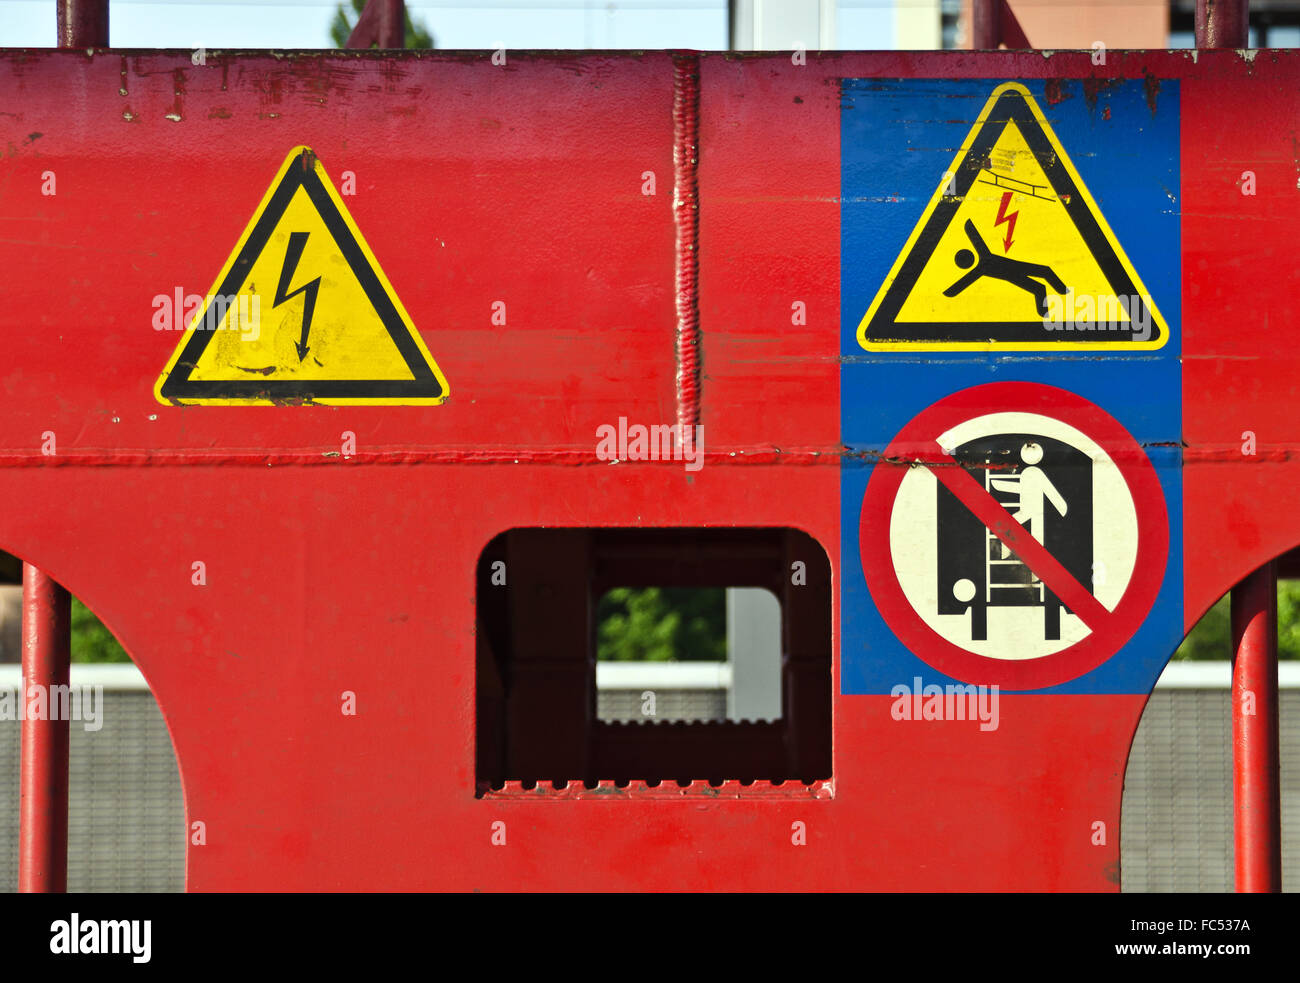 Warnzeichen bei einem rot lackierten Zug-waggon Stockfoto